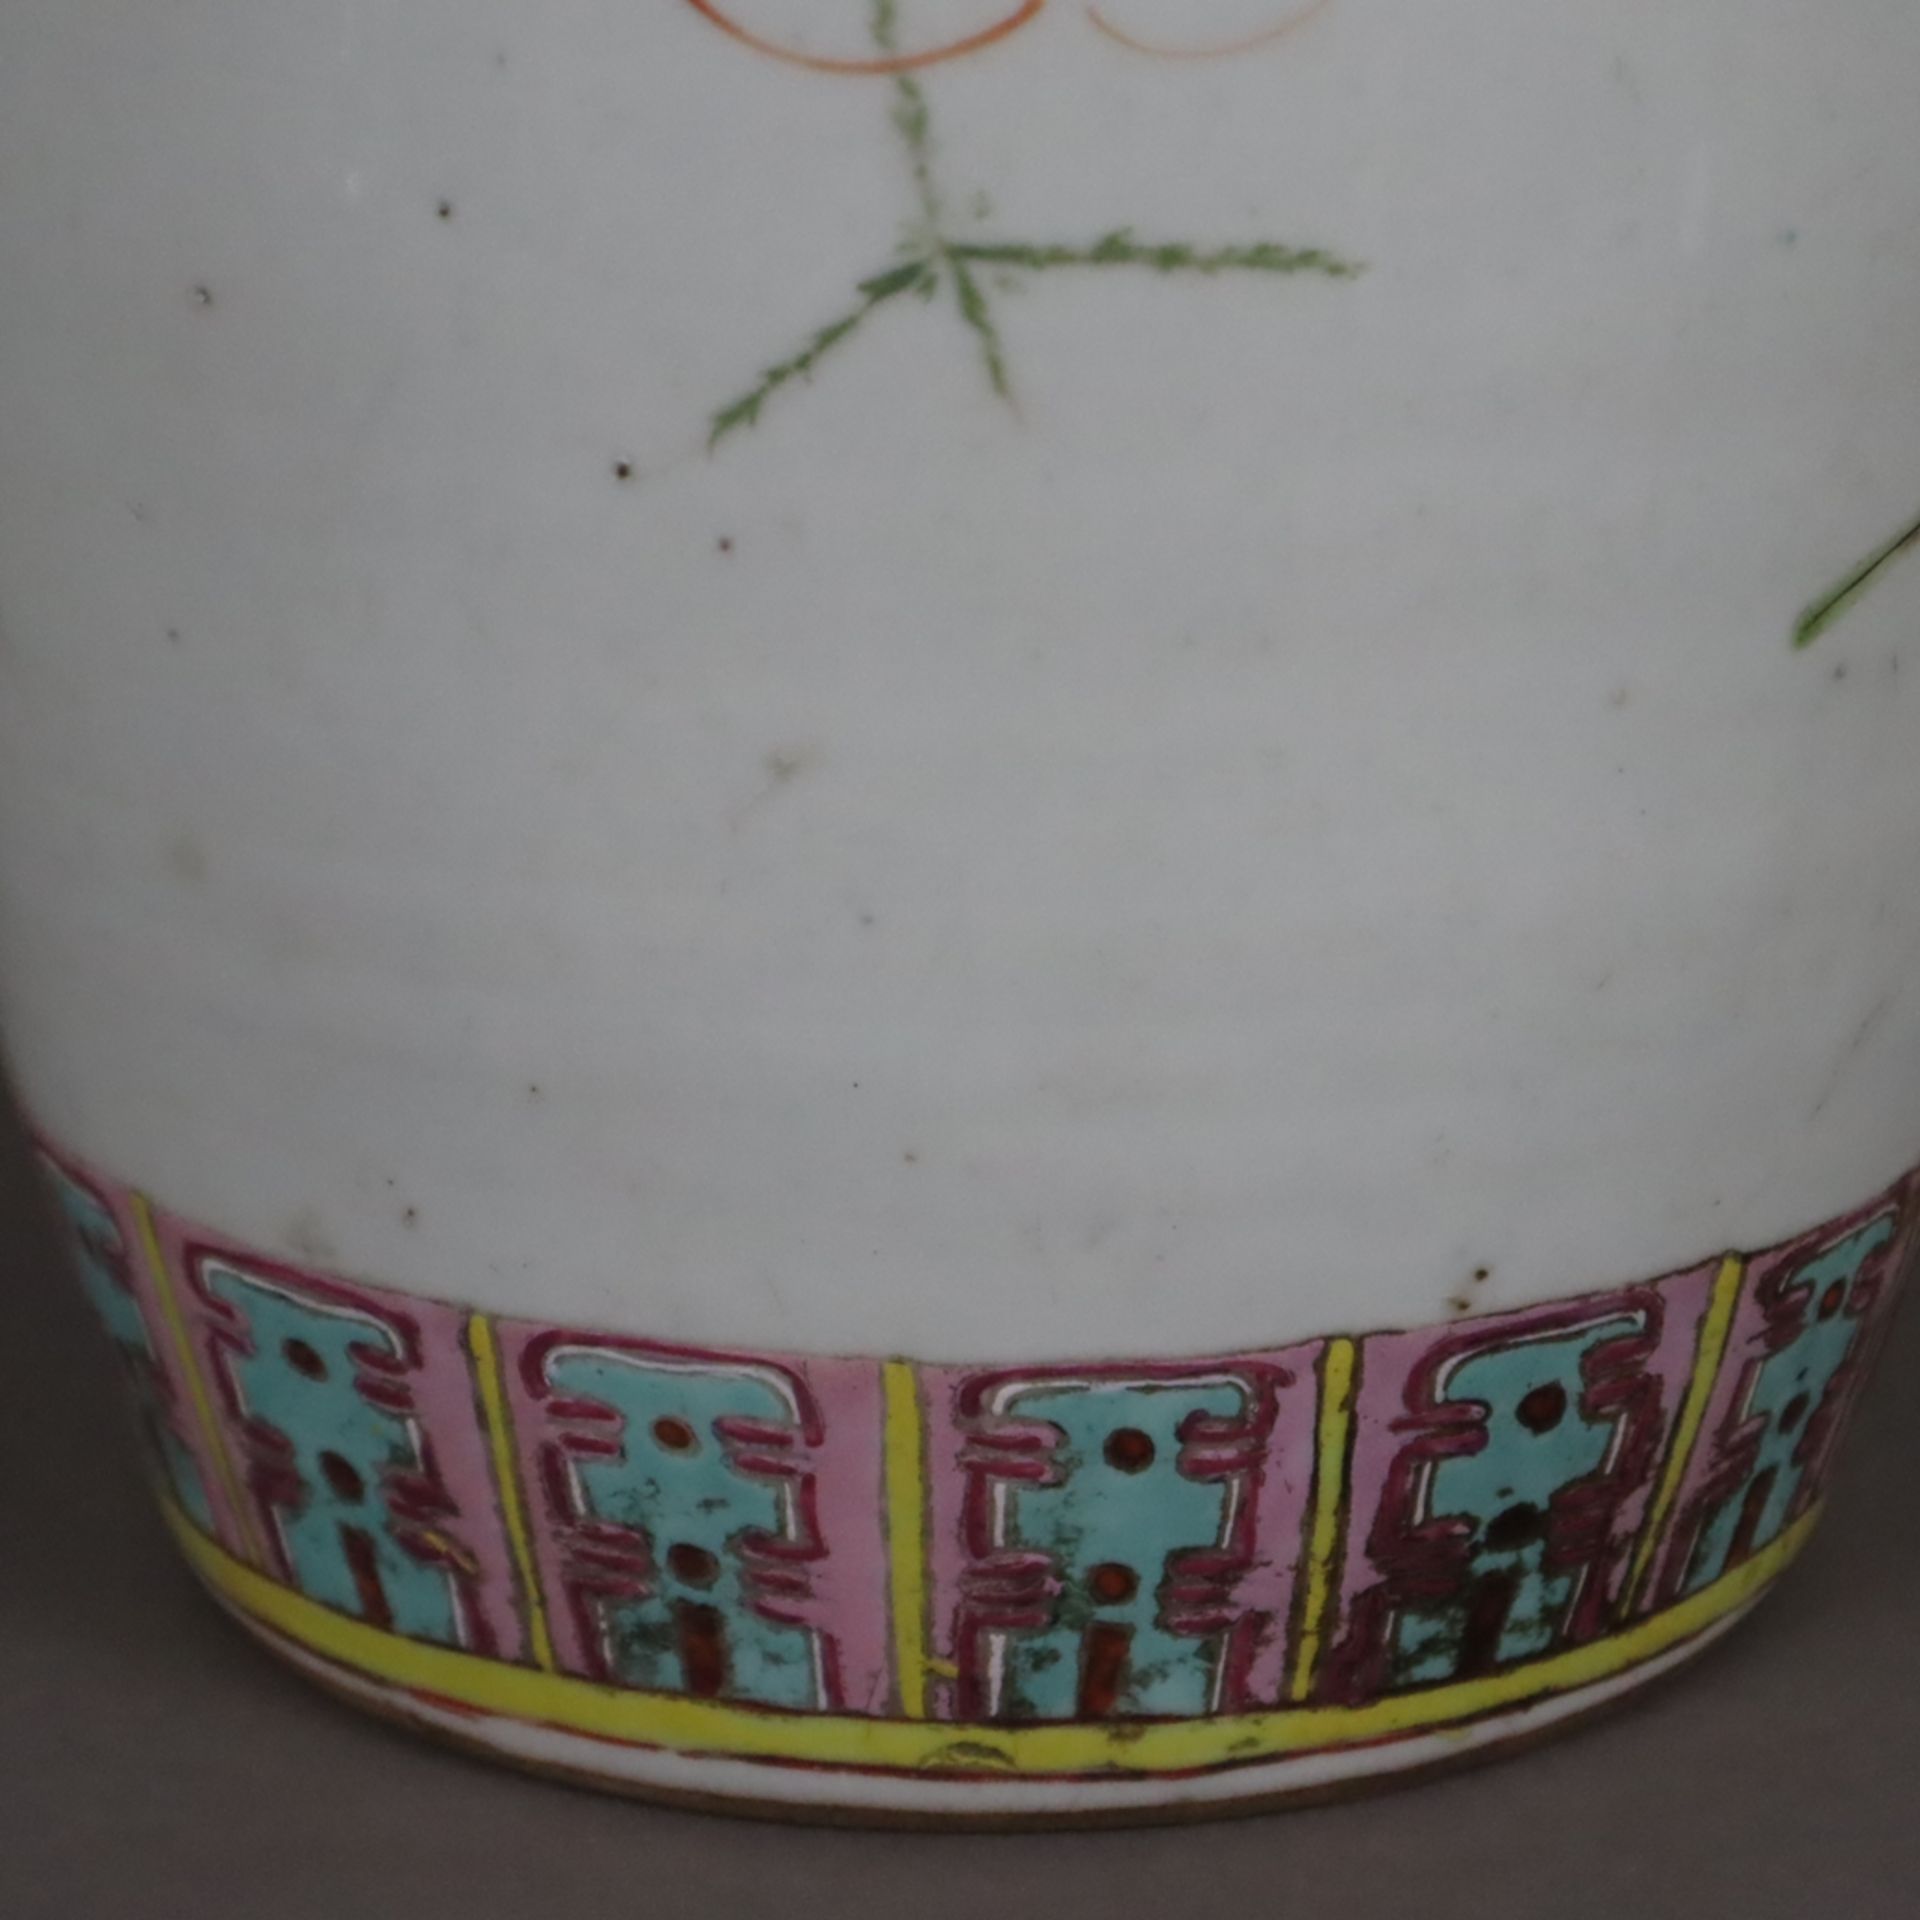 Hoher Ingwertopf mit Holzdeckel - China, späte Qing-Dynastie, Porzellan, ovoide Wandung mit gerunde - Image 11 of 12